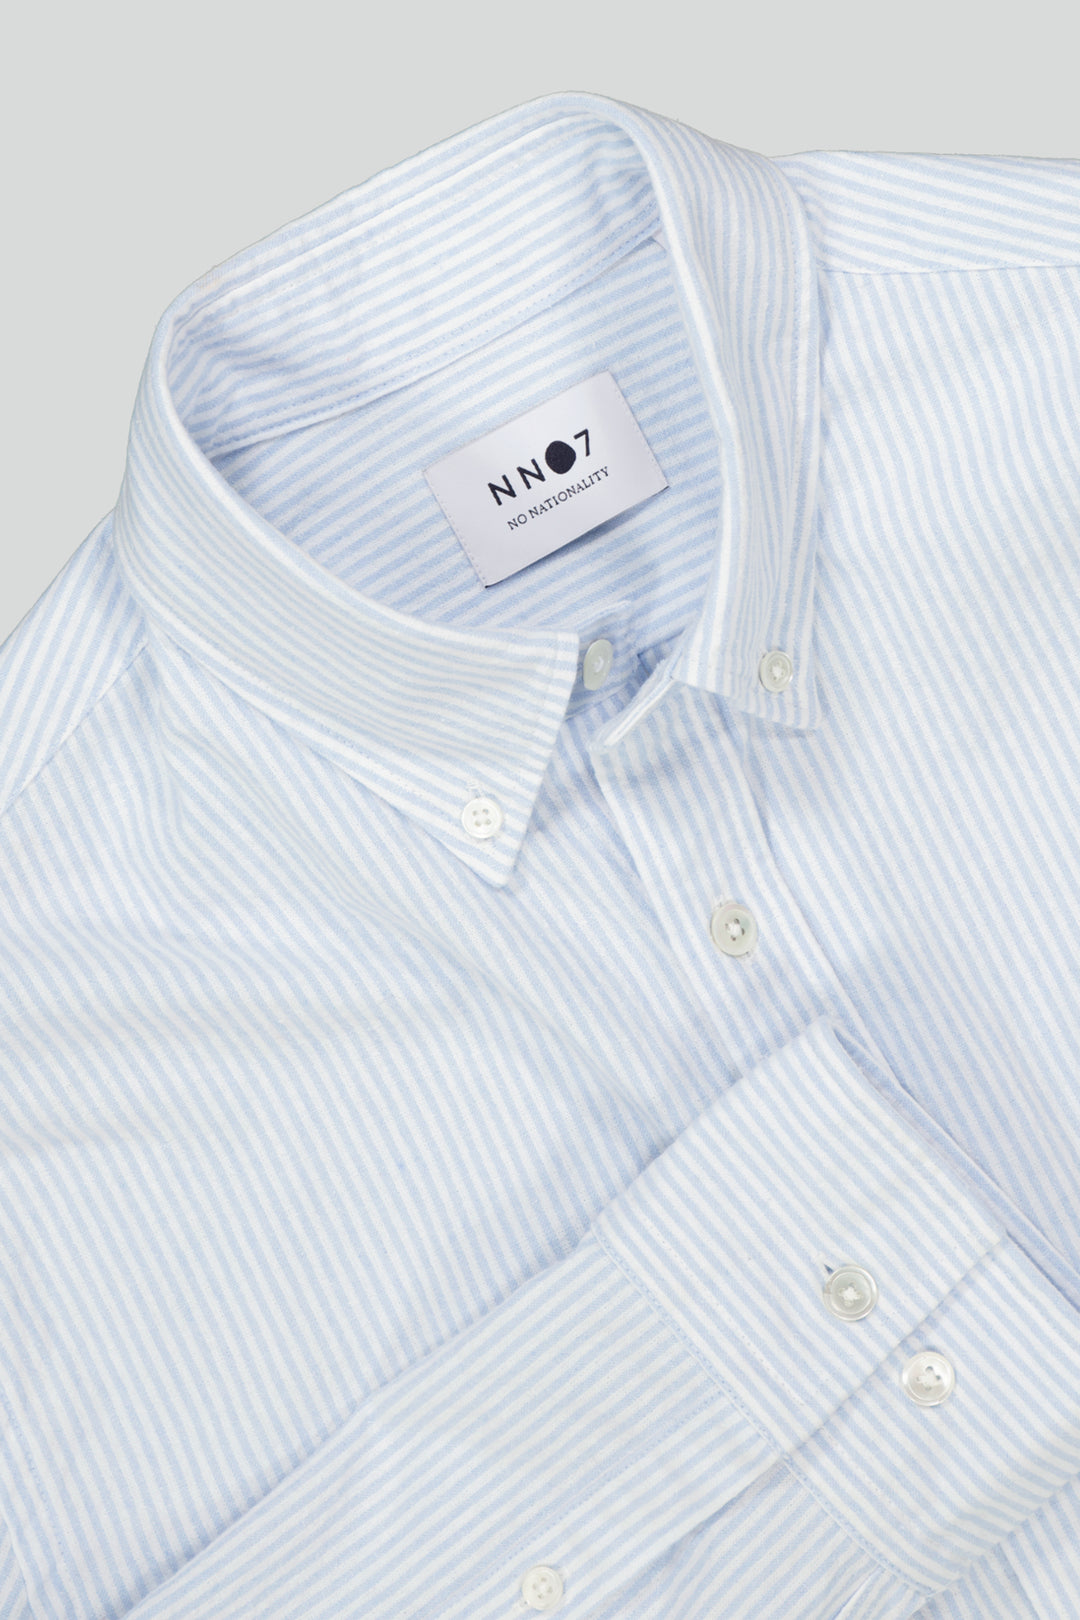 NN07 - Arne BD 5246 Button Down Shirt in Blue Stripe | Buster McGee